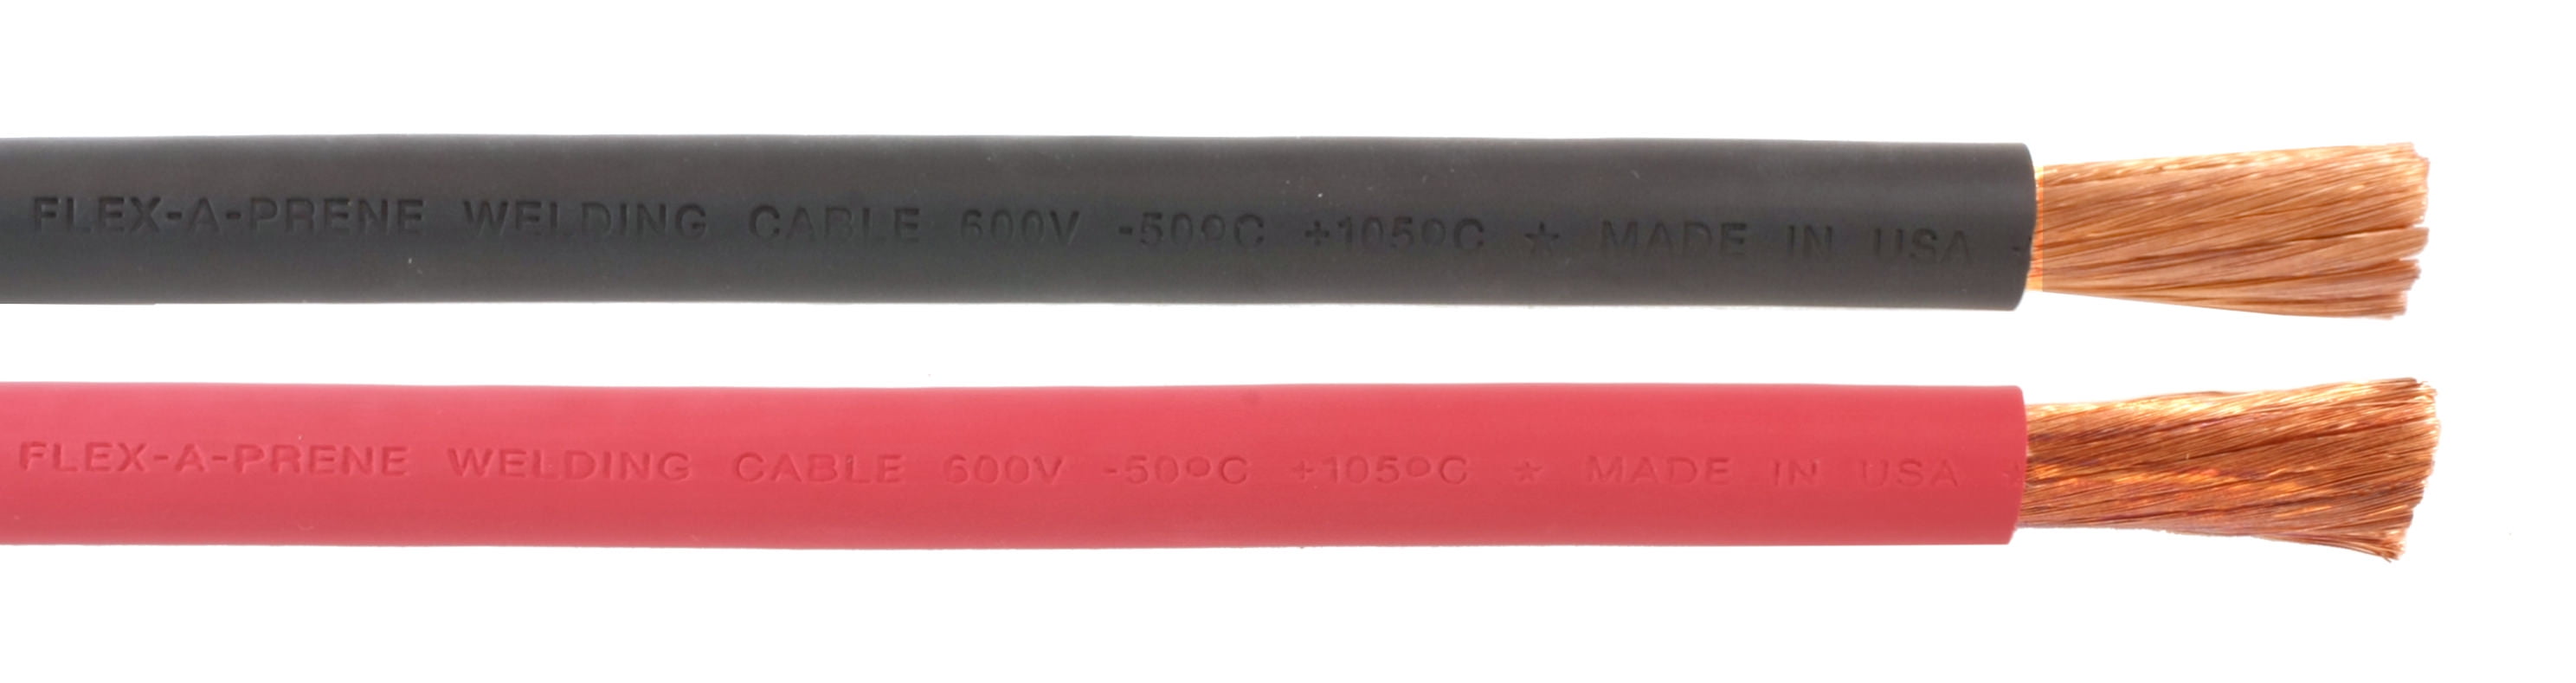 26 FEET Made in USA 2 GA Flex-A-Prene Welding/Battery Cable 600 V Black 